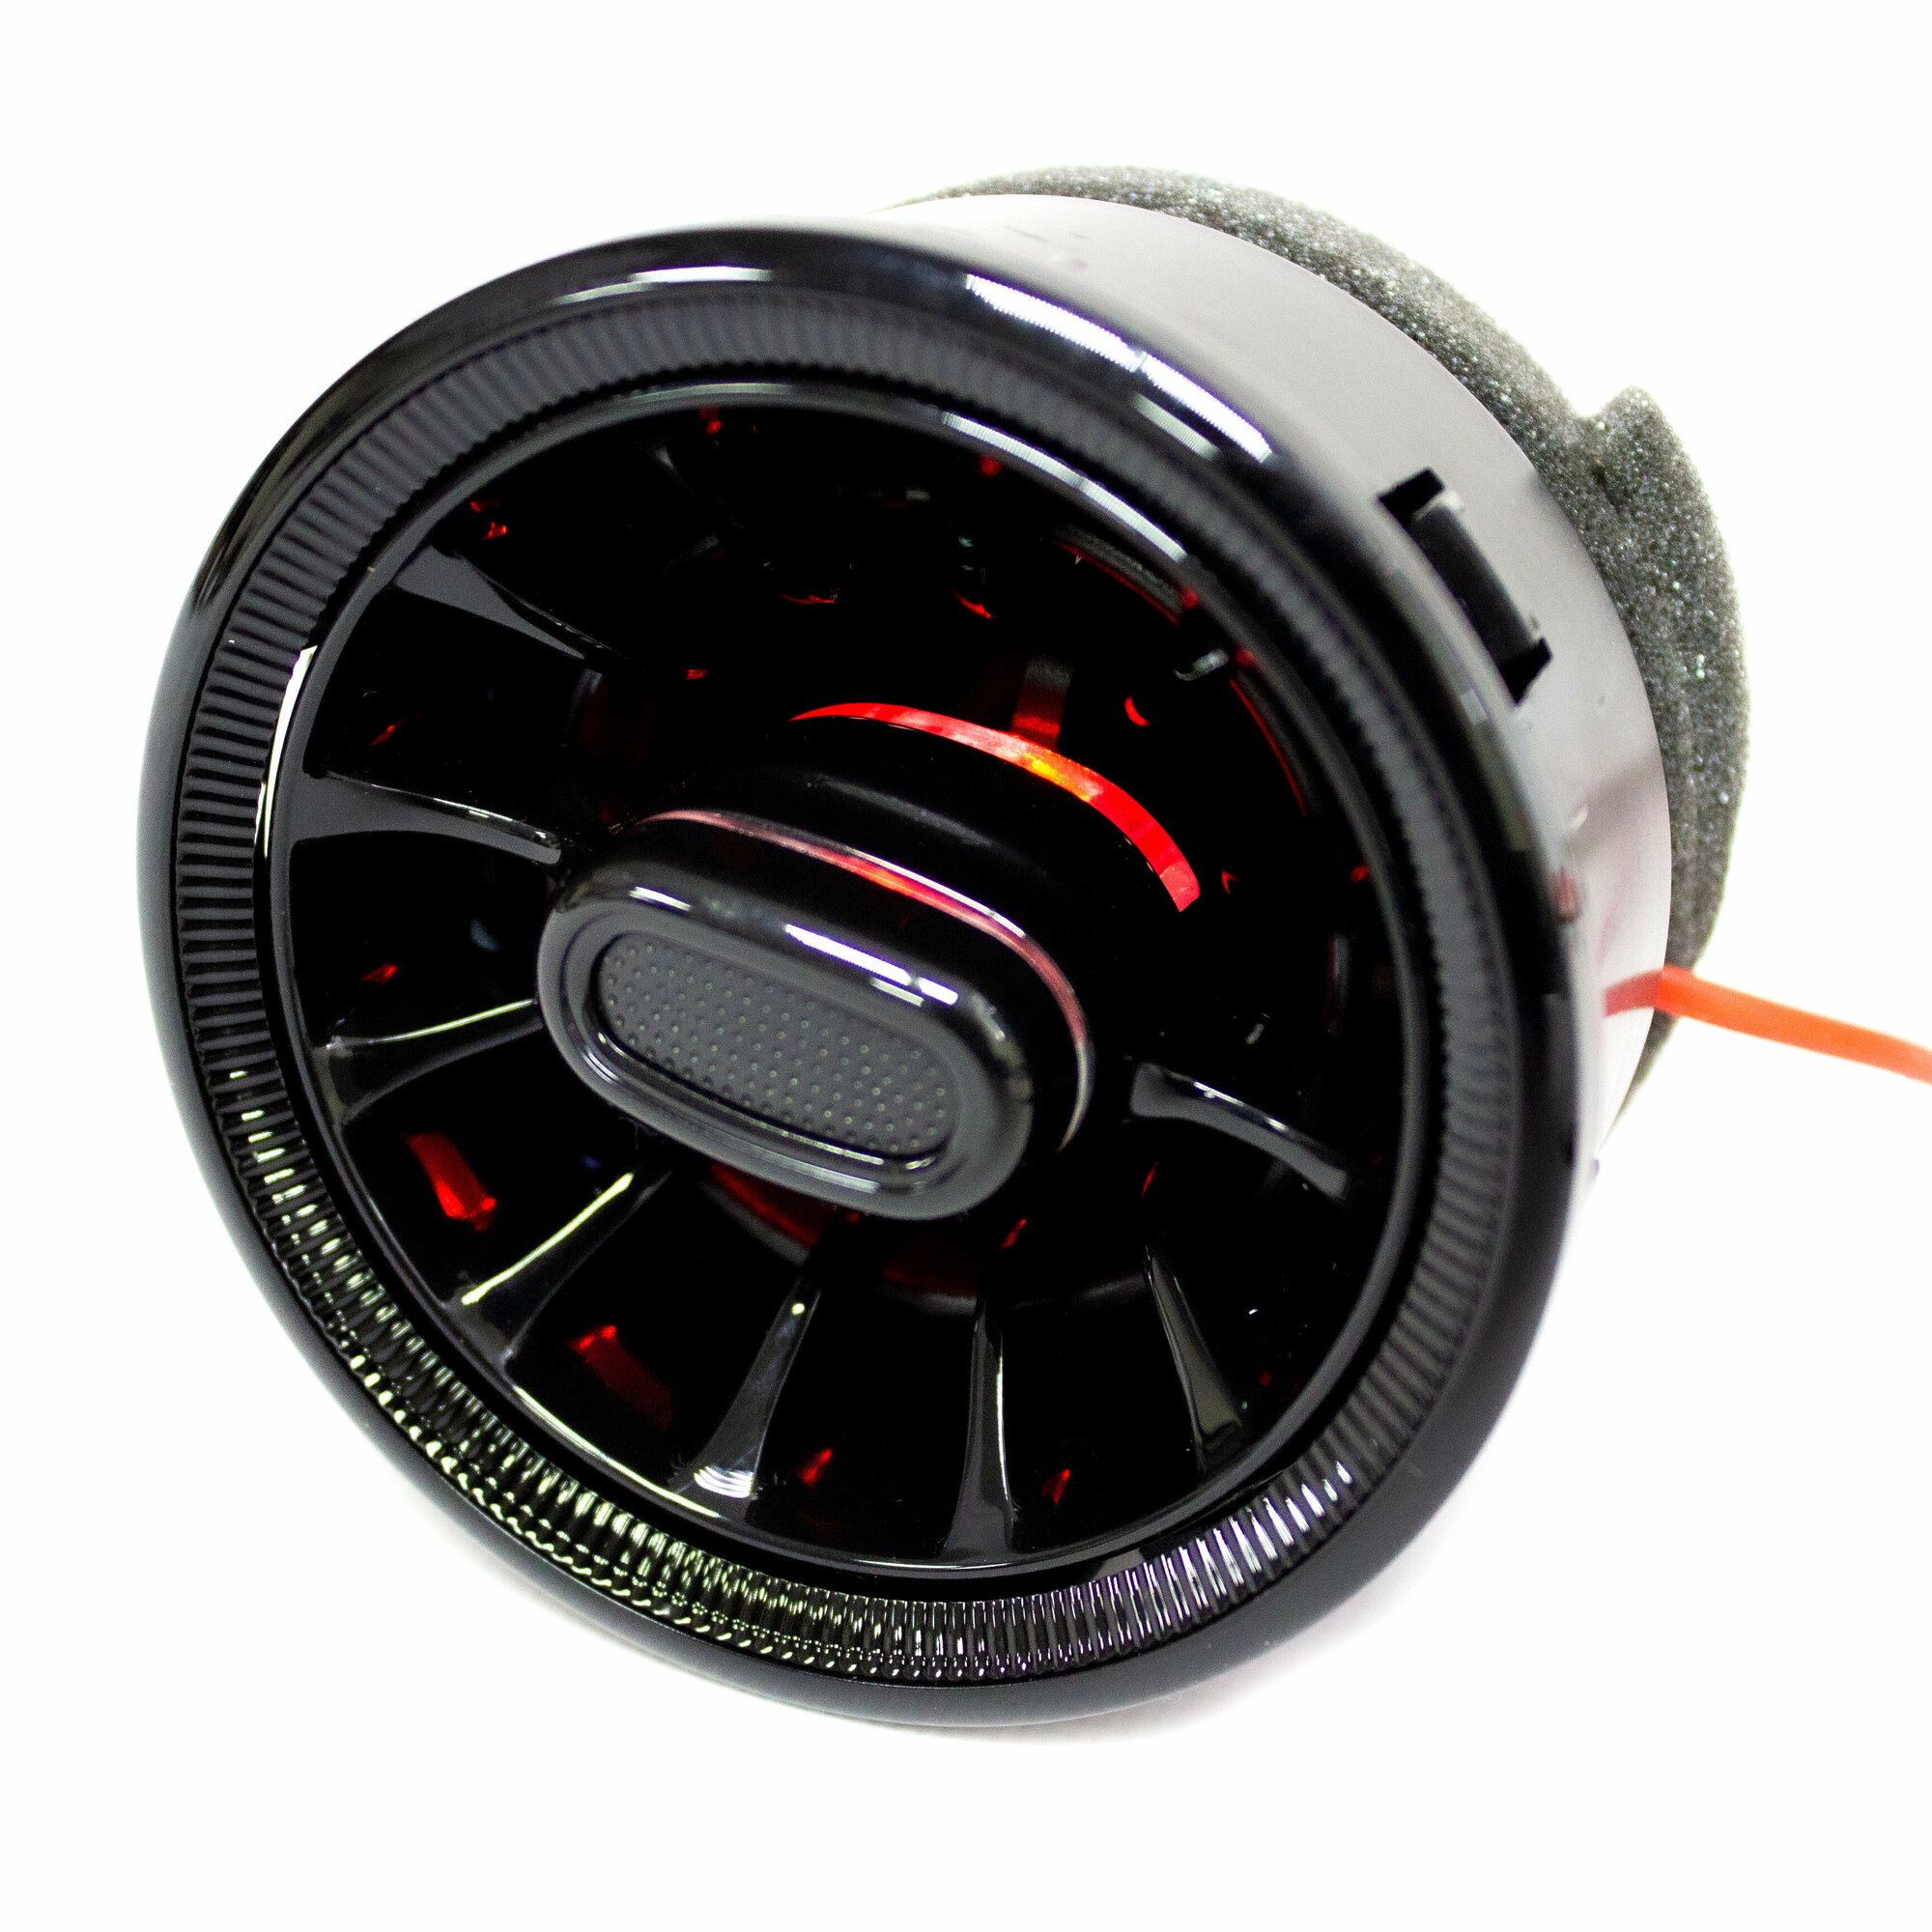 Сопла воздуховода Гранта седан лифтбек спорт Гранта FL Ларгус Датсун mi-do дефлектор в стиле AMG (mini ver 2.0) регулируемое с красной подсветкой - черный лак 1шт.